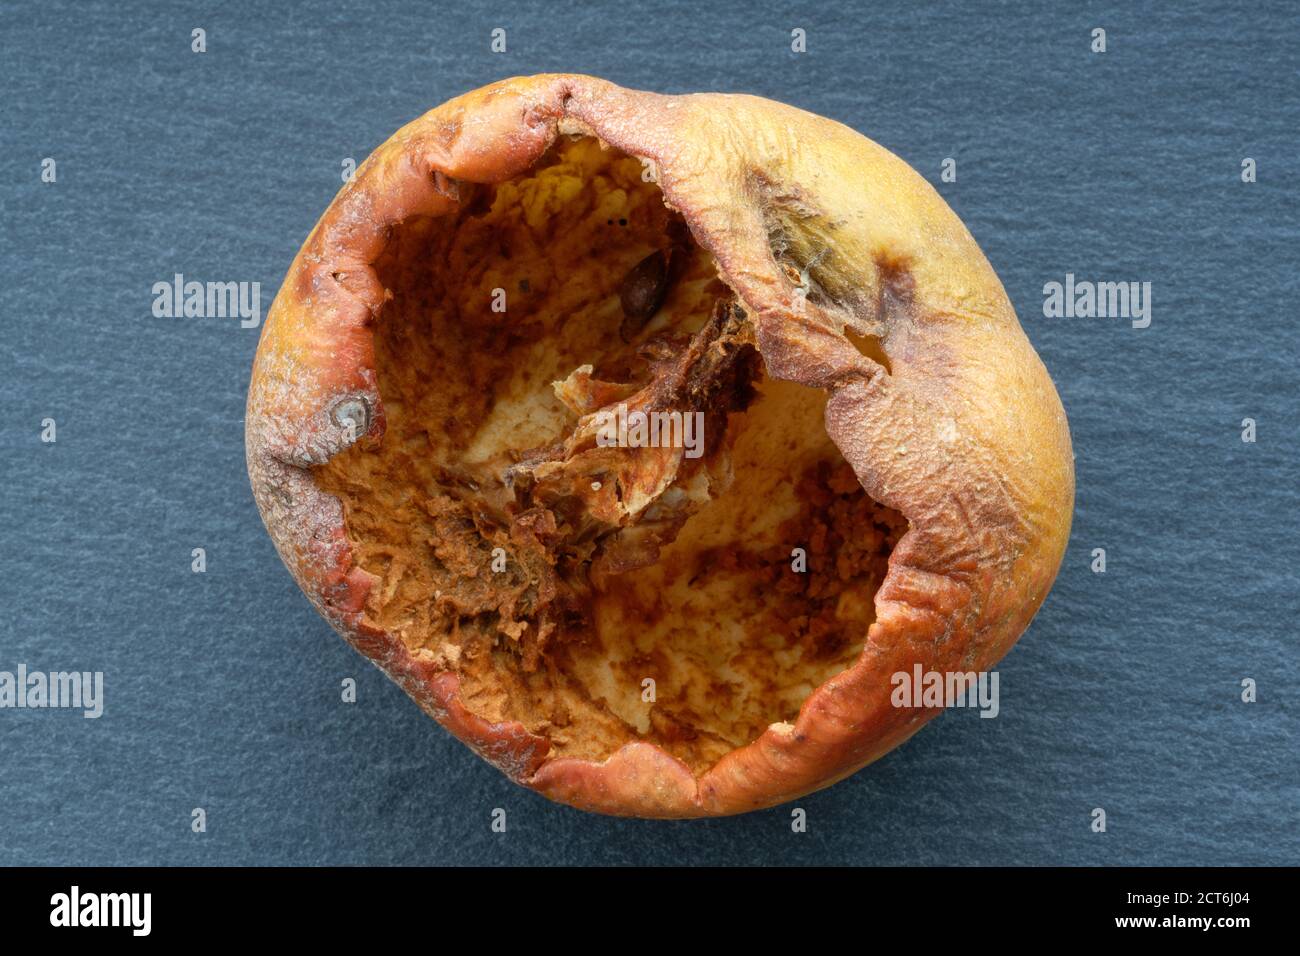 Una mela mangiata via al nucleo dagli insetti. Un'immagine in studio di una mela raccolta che è stata devastata dalla vita di insetti. Il foro di ingresso può essere visto in alto. Foto Stock